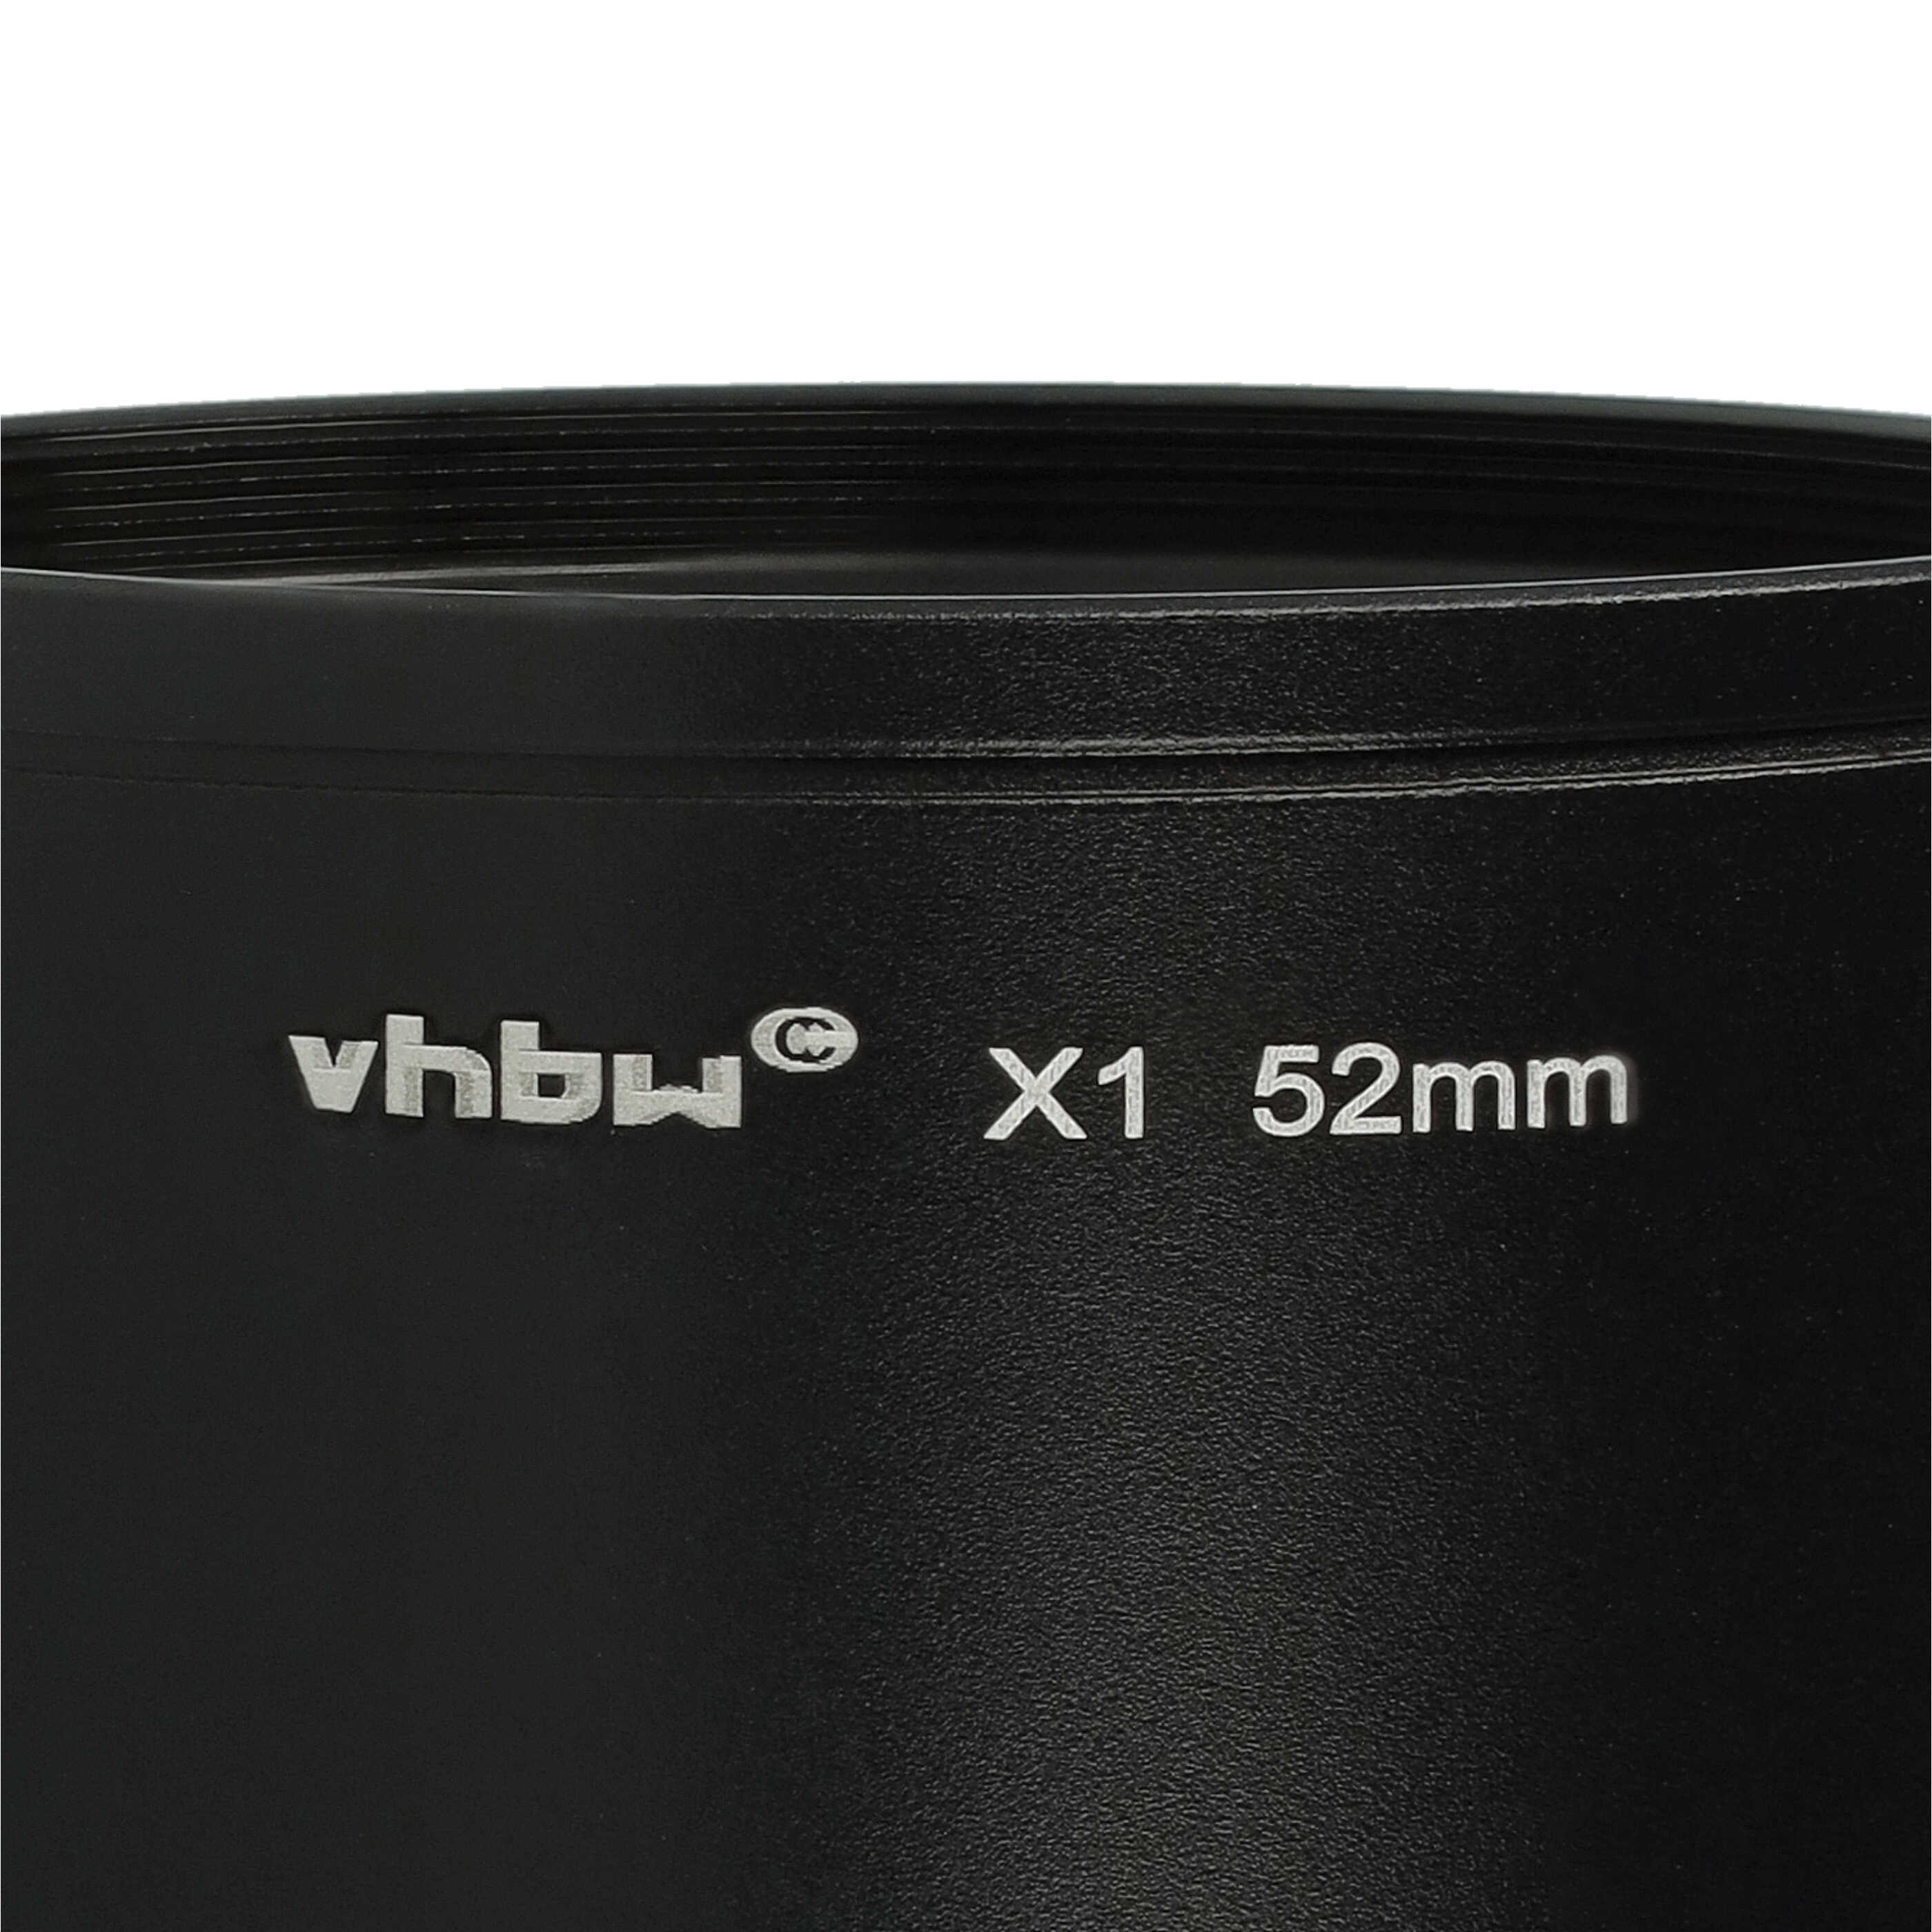 Redukcja filtrowa 52 mm do obiektywu aparatu Leica X1, X2 